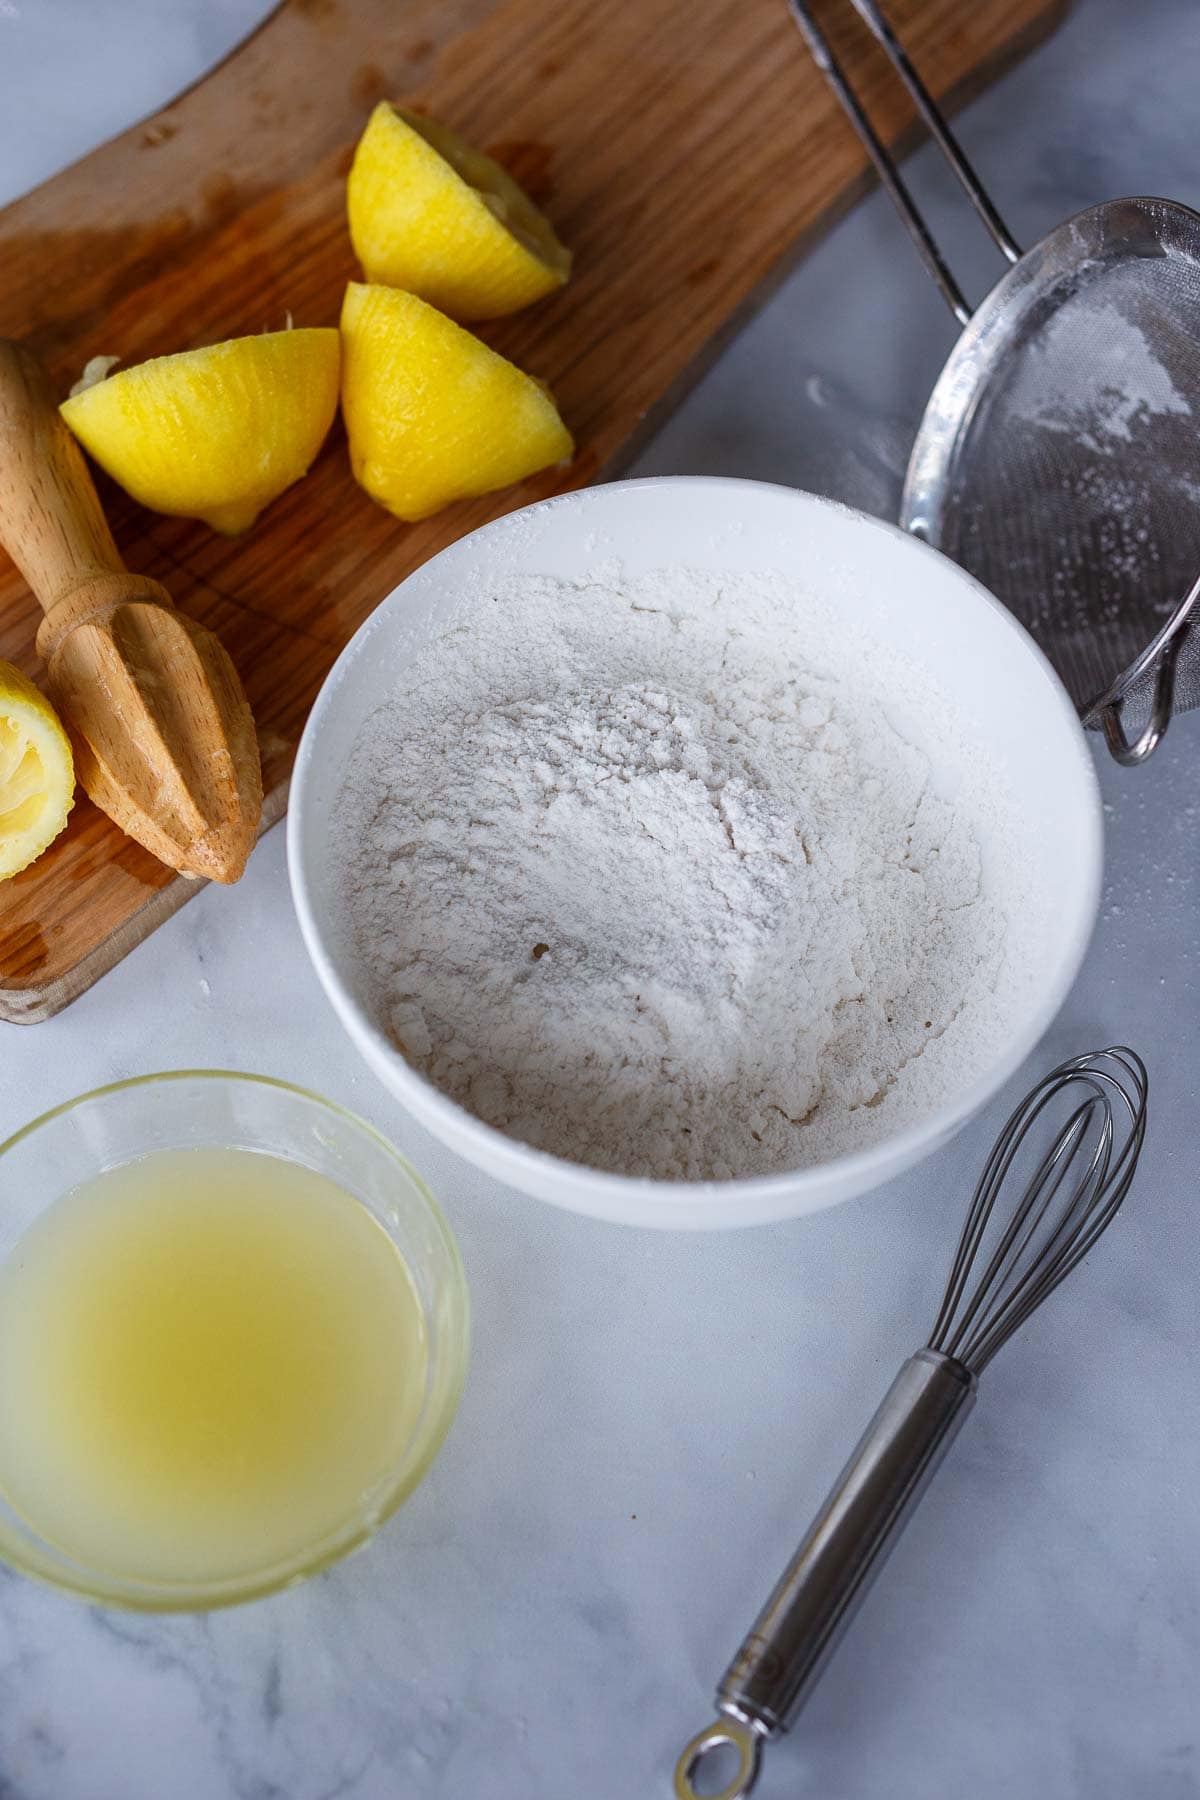 making lemon glaze with powdered sugar and lemon juice.